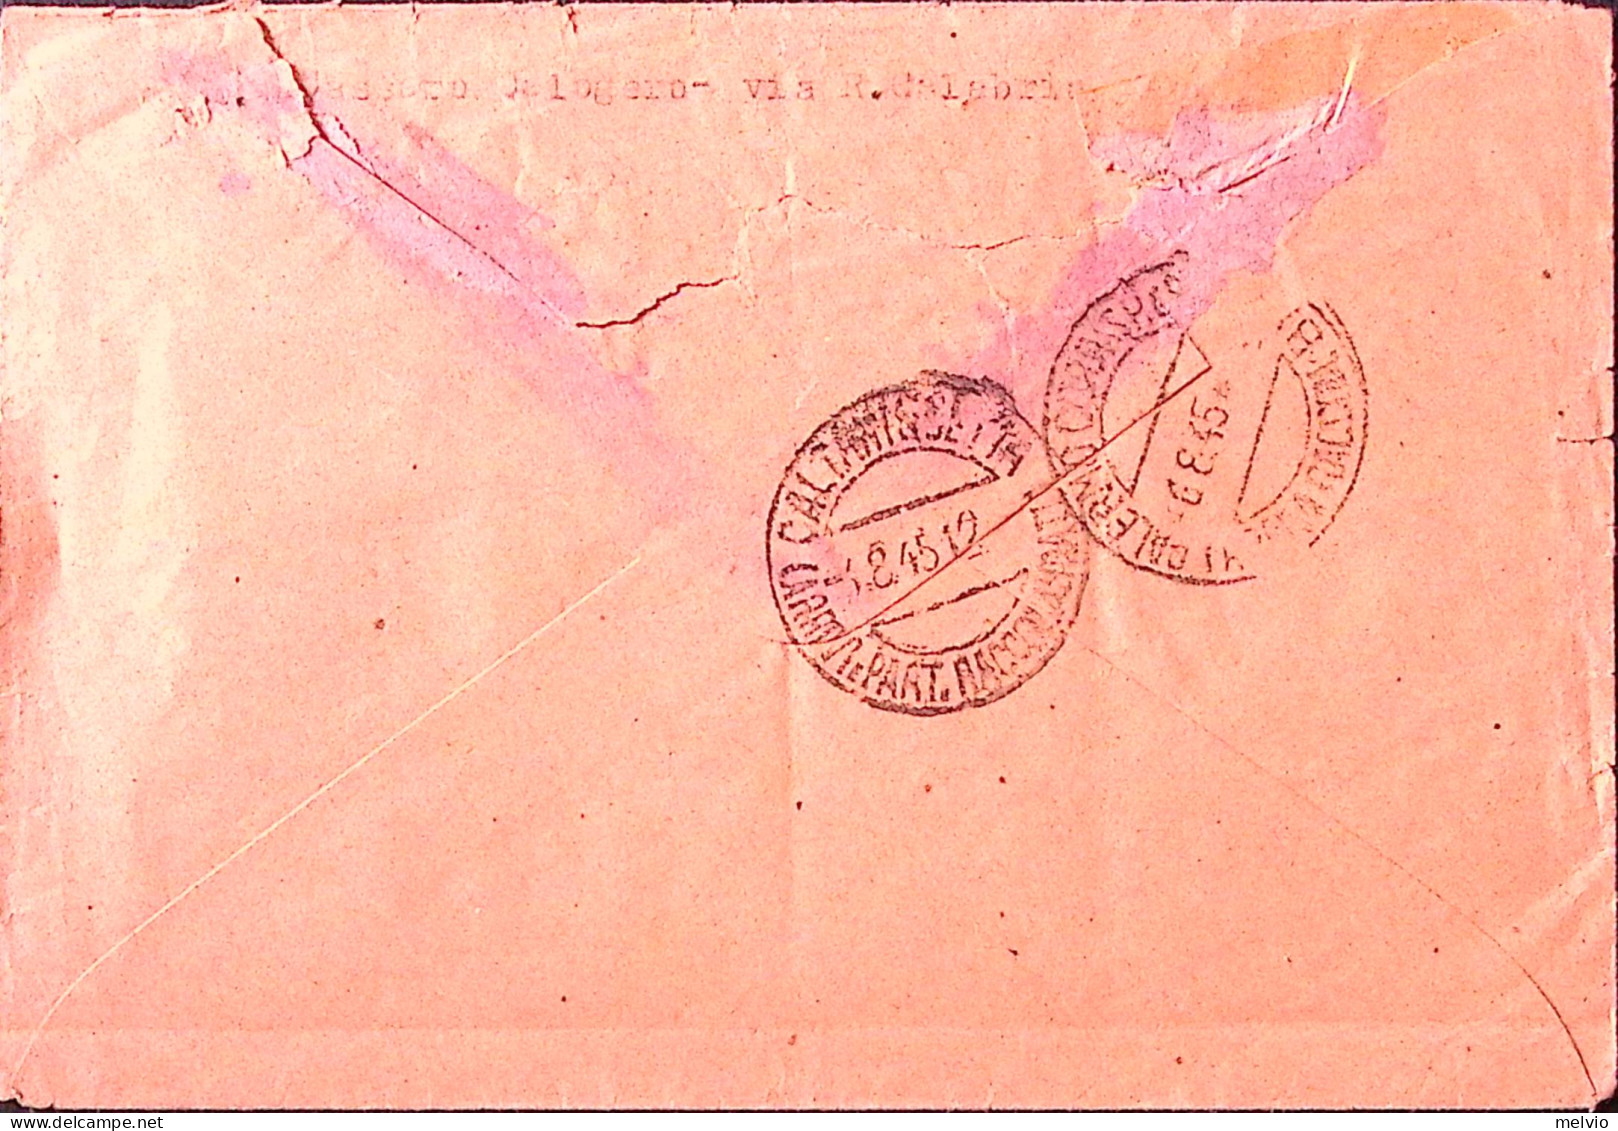 1945-Imperiale Sopr. Coppia Lire 2,50/1,75 + Imperiale Senza Fasci Coppia Lire 1 - Marcophilia